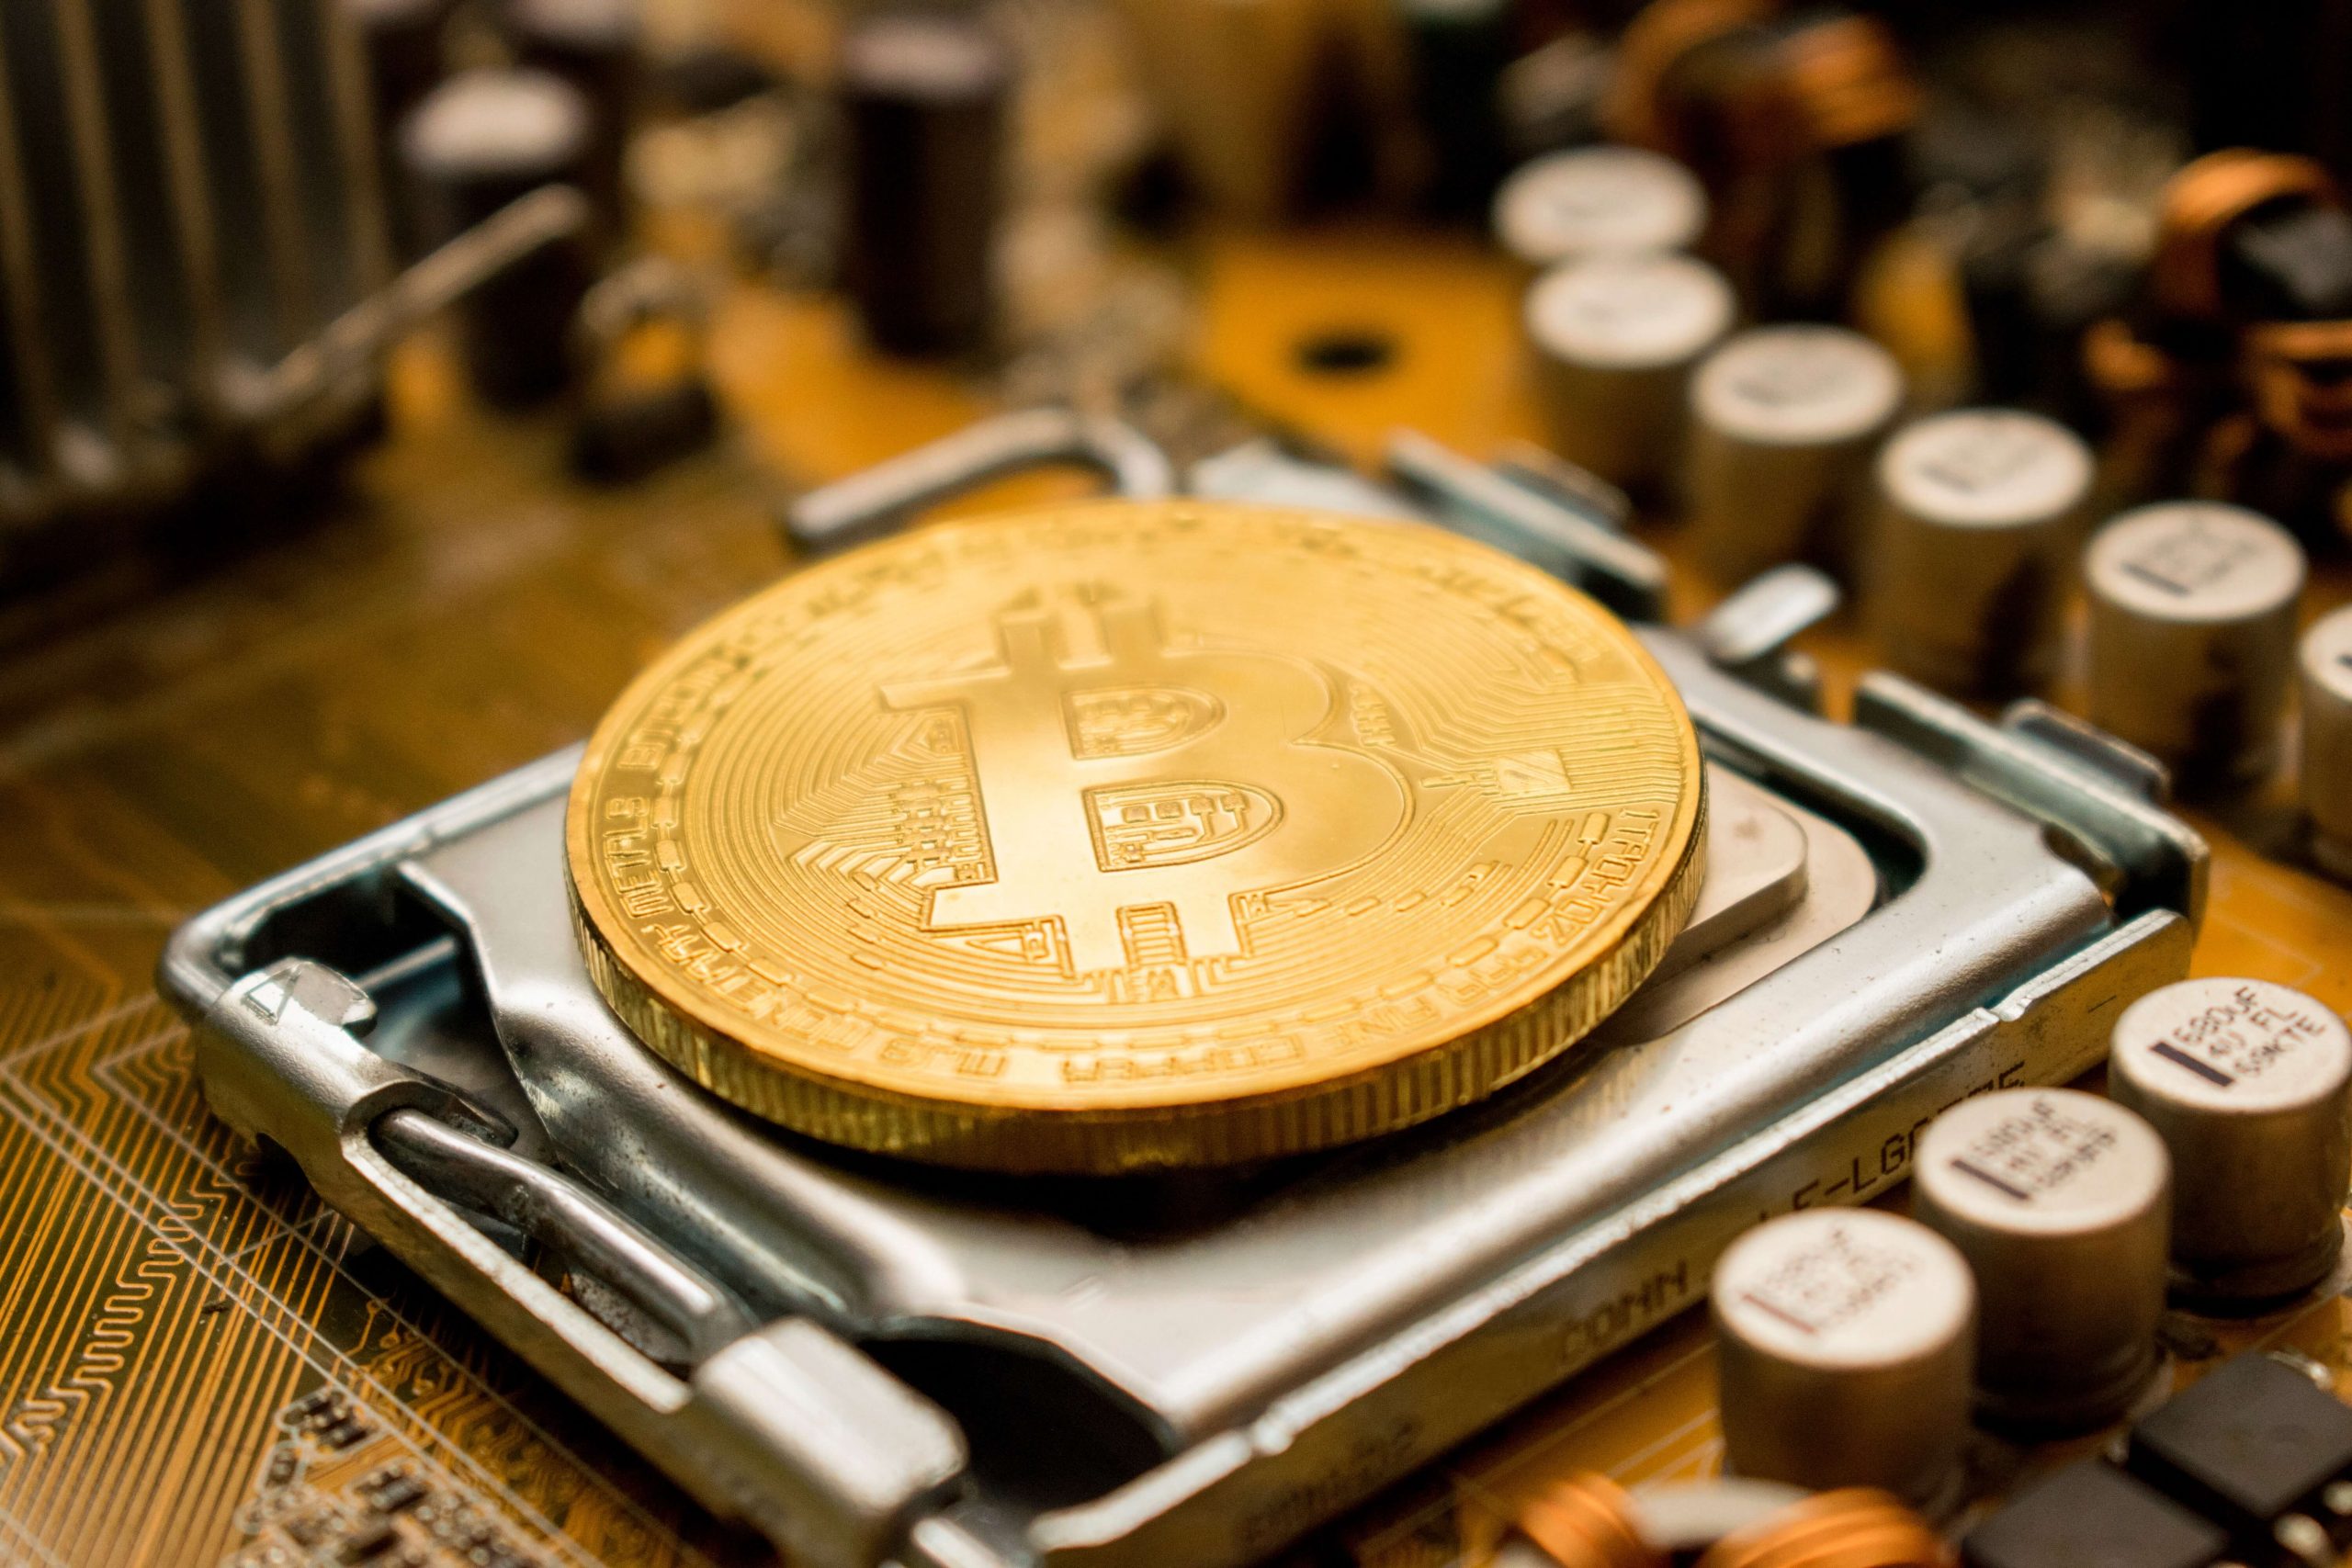 Marathon Splashes $120 Million On Bitcoin Miners From Bitmain